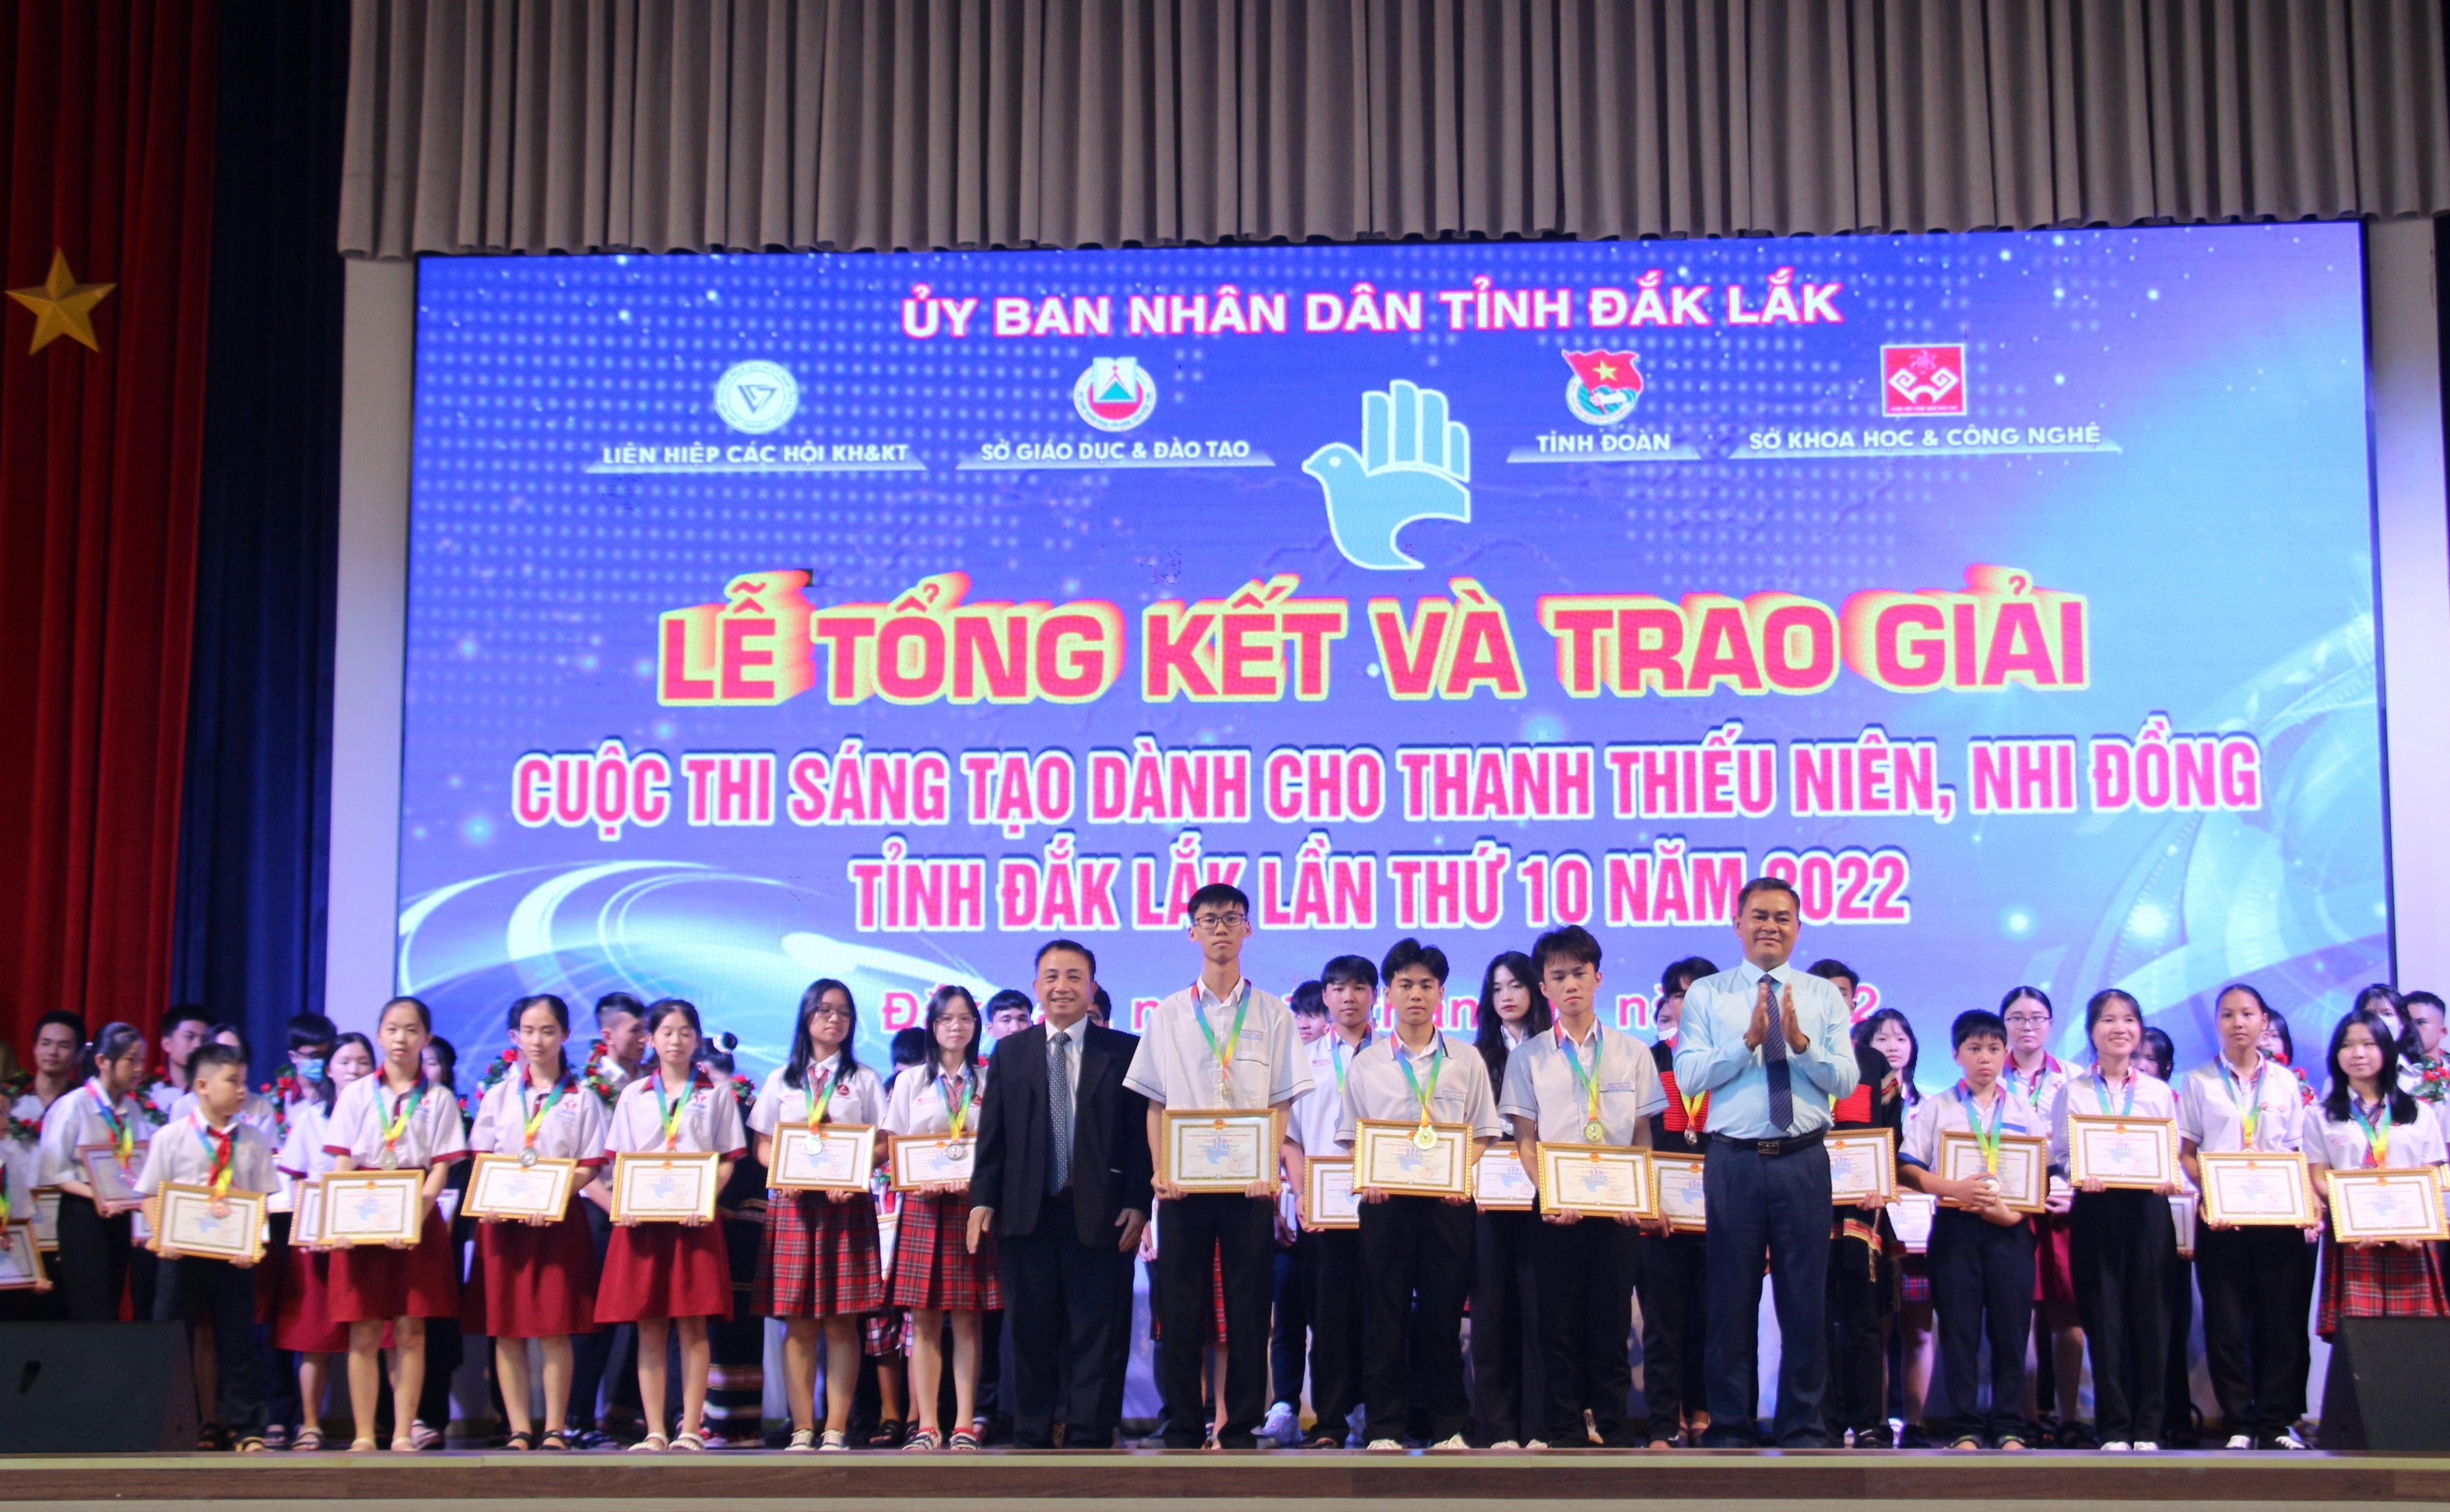 Trao giải Cuộc thi sáng tạo dành cho thanh thiếu niên nhi đồng tỉnh Đắk Lắk lần thứ 10 năm 2022